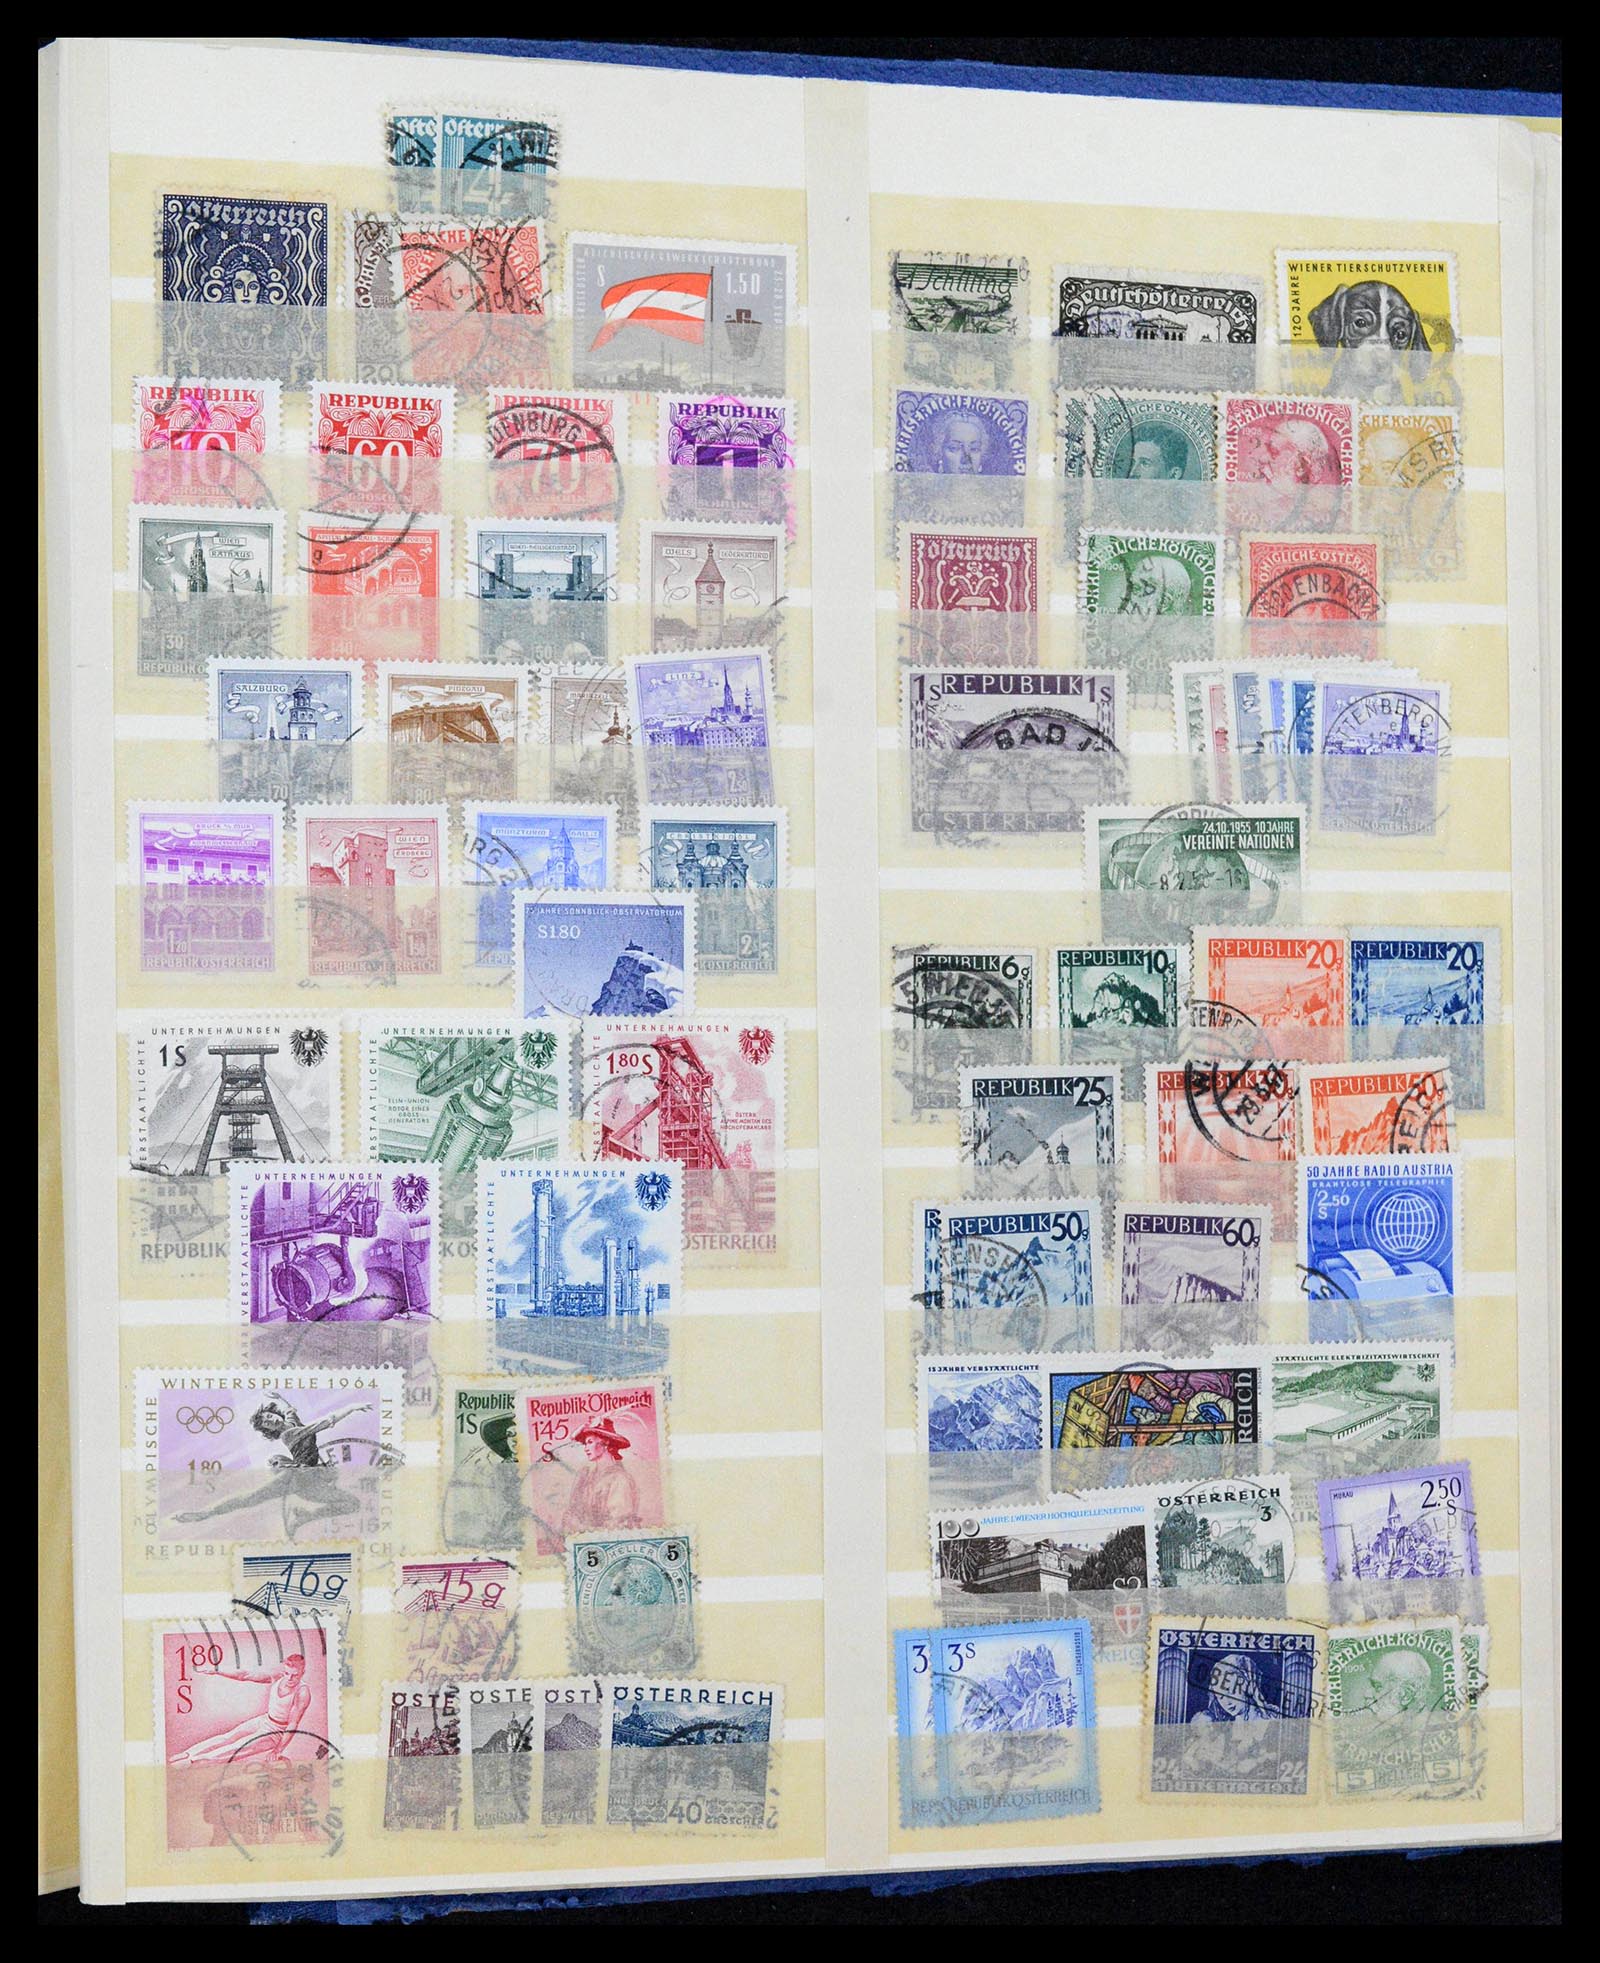 38188 0075 - Postzegelverzameling 38188 DDR combinaties 1955-1990.